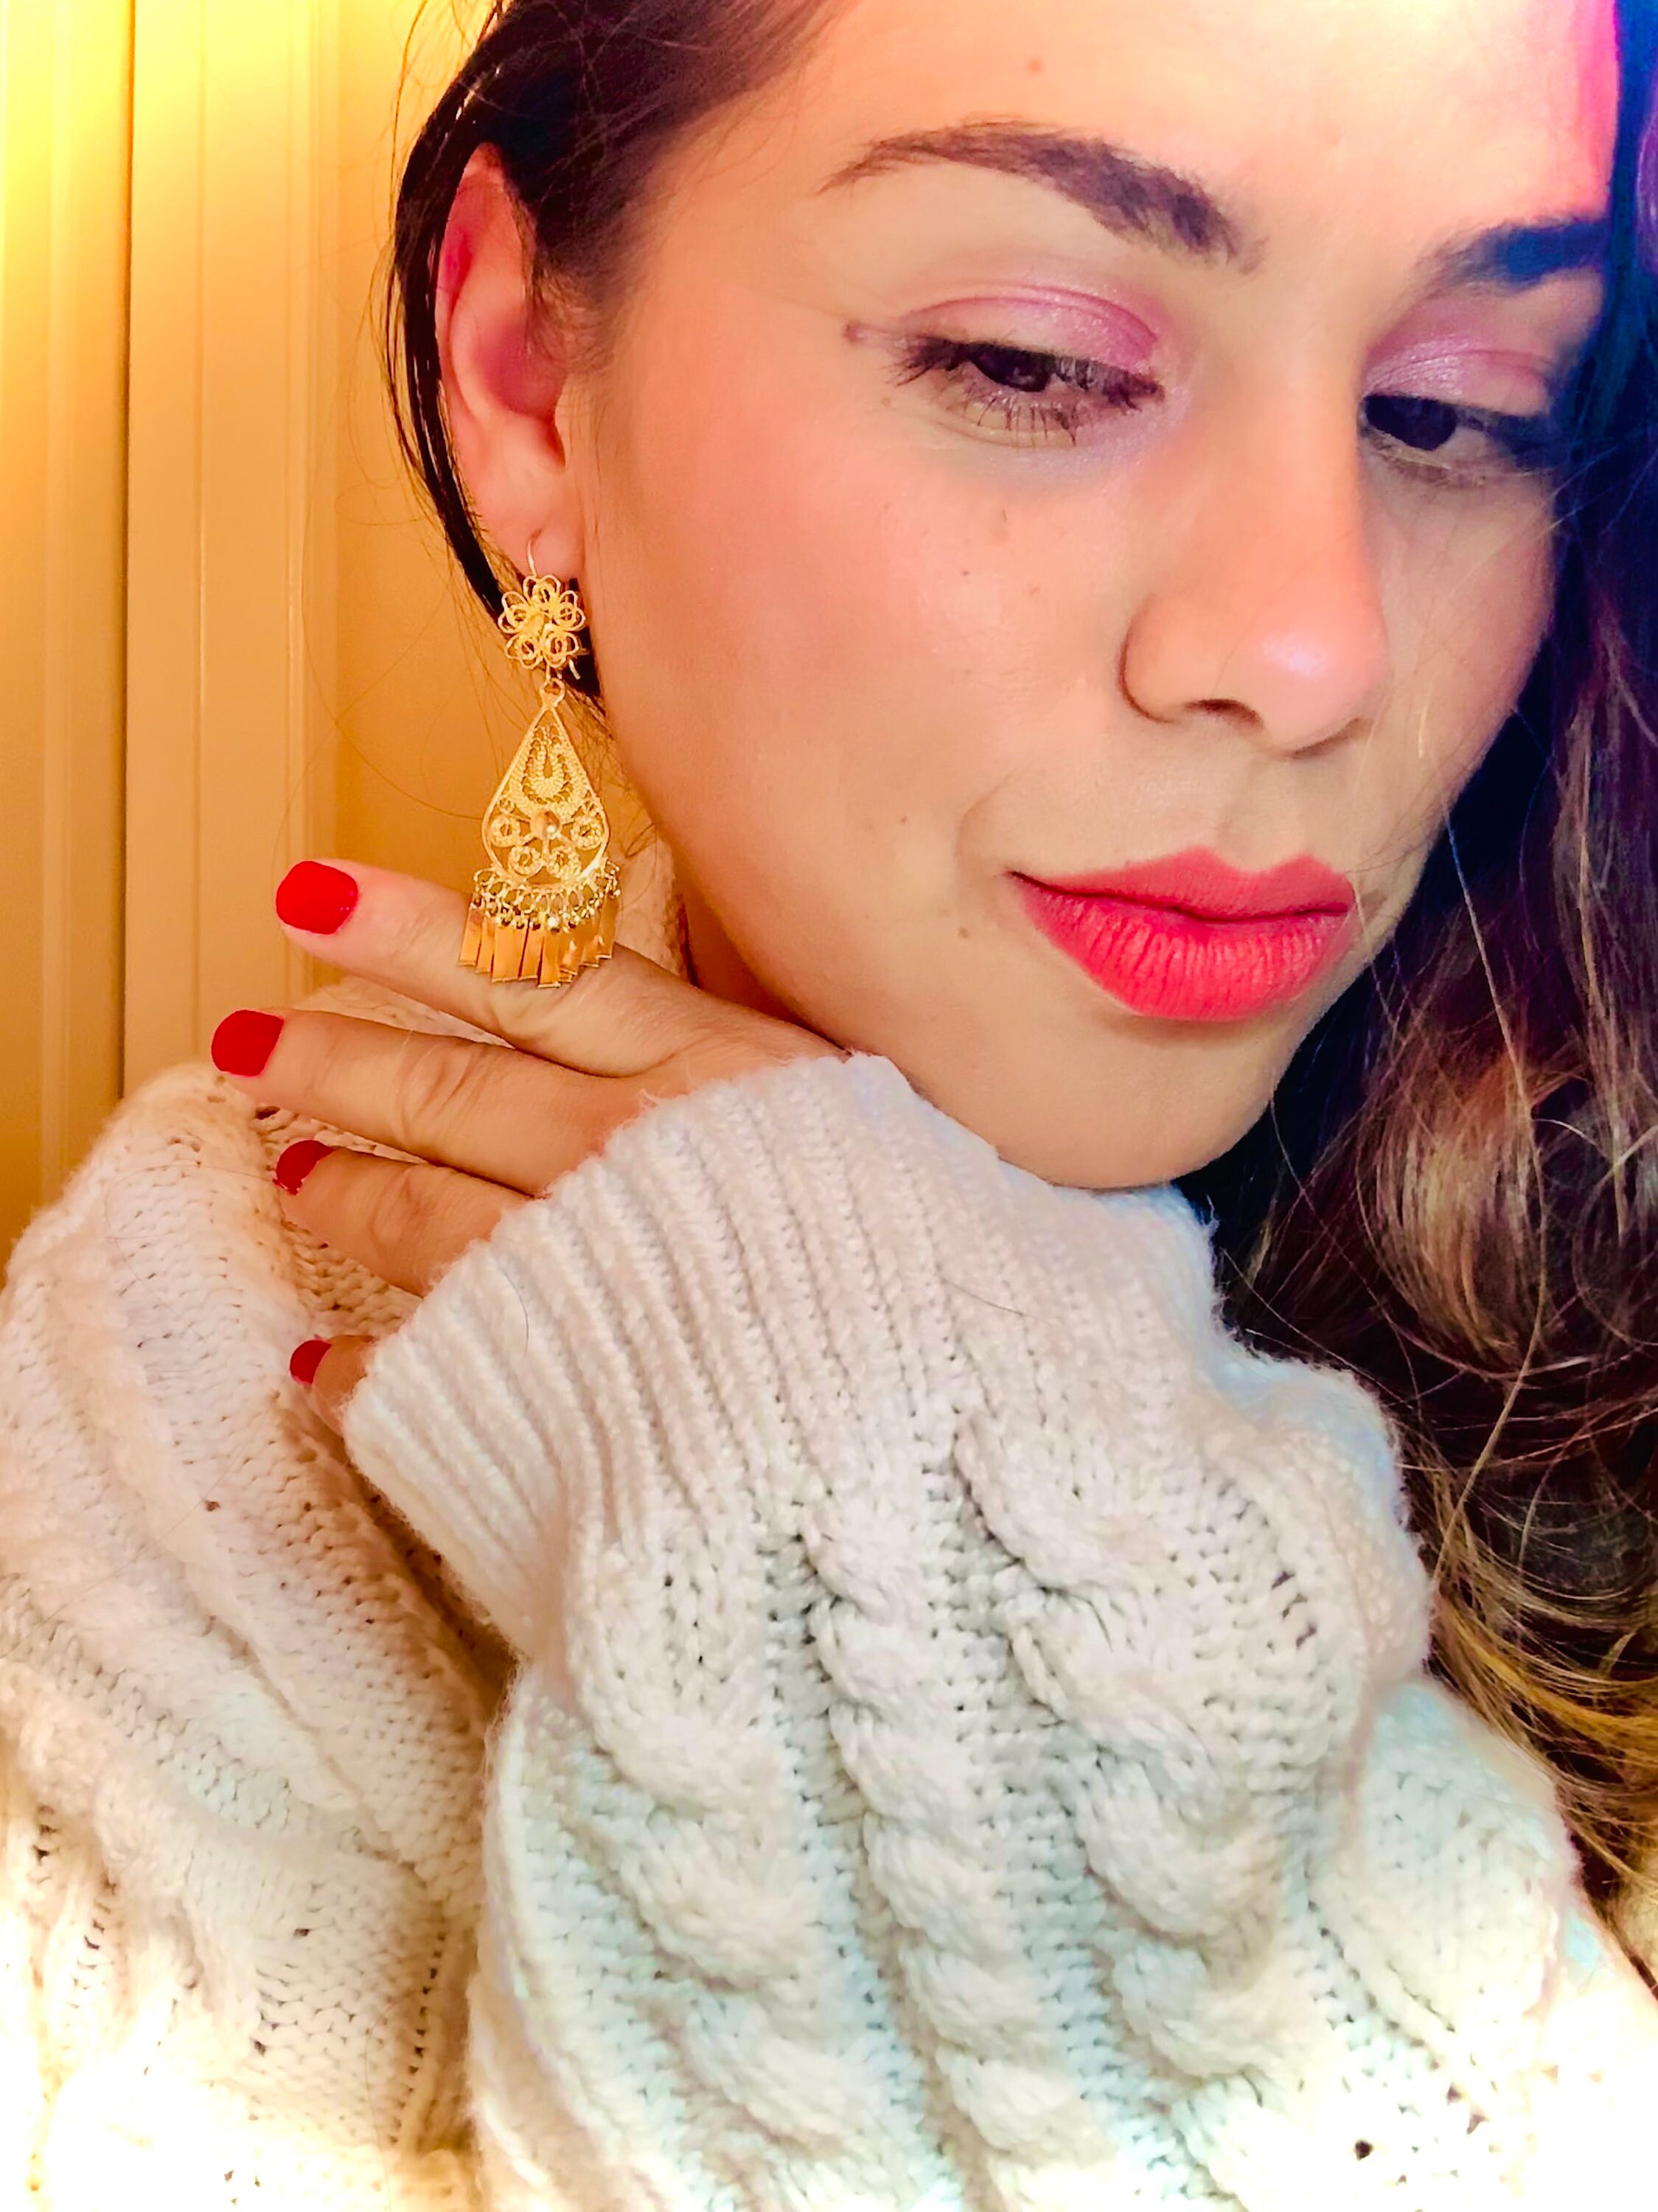 Folklorico Dance Mexican Gold Filigree Earrings Full Flower 